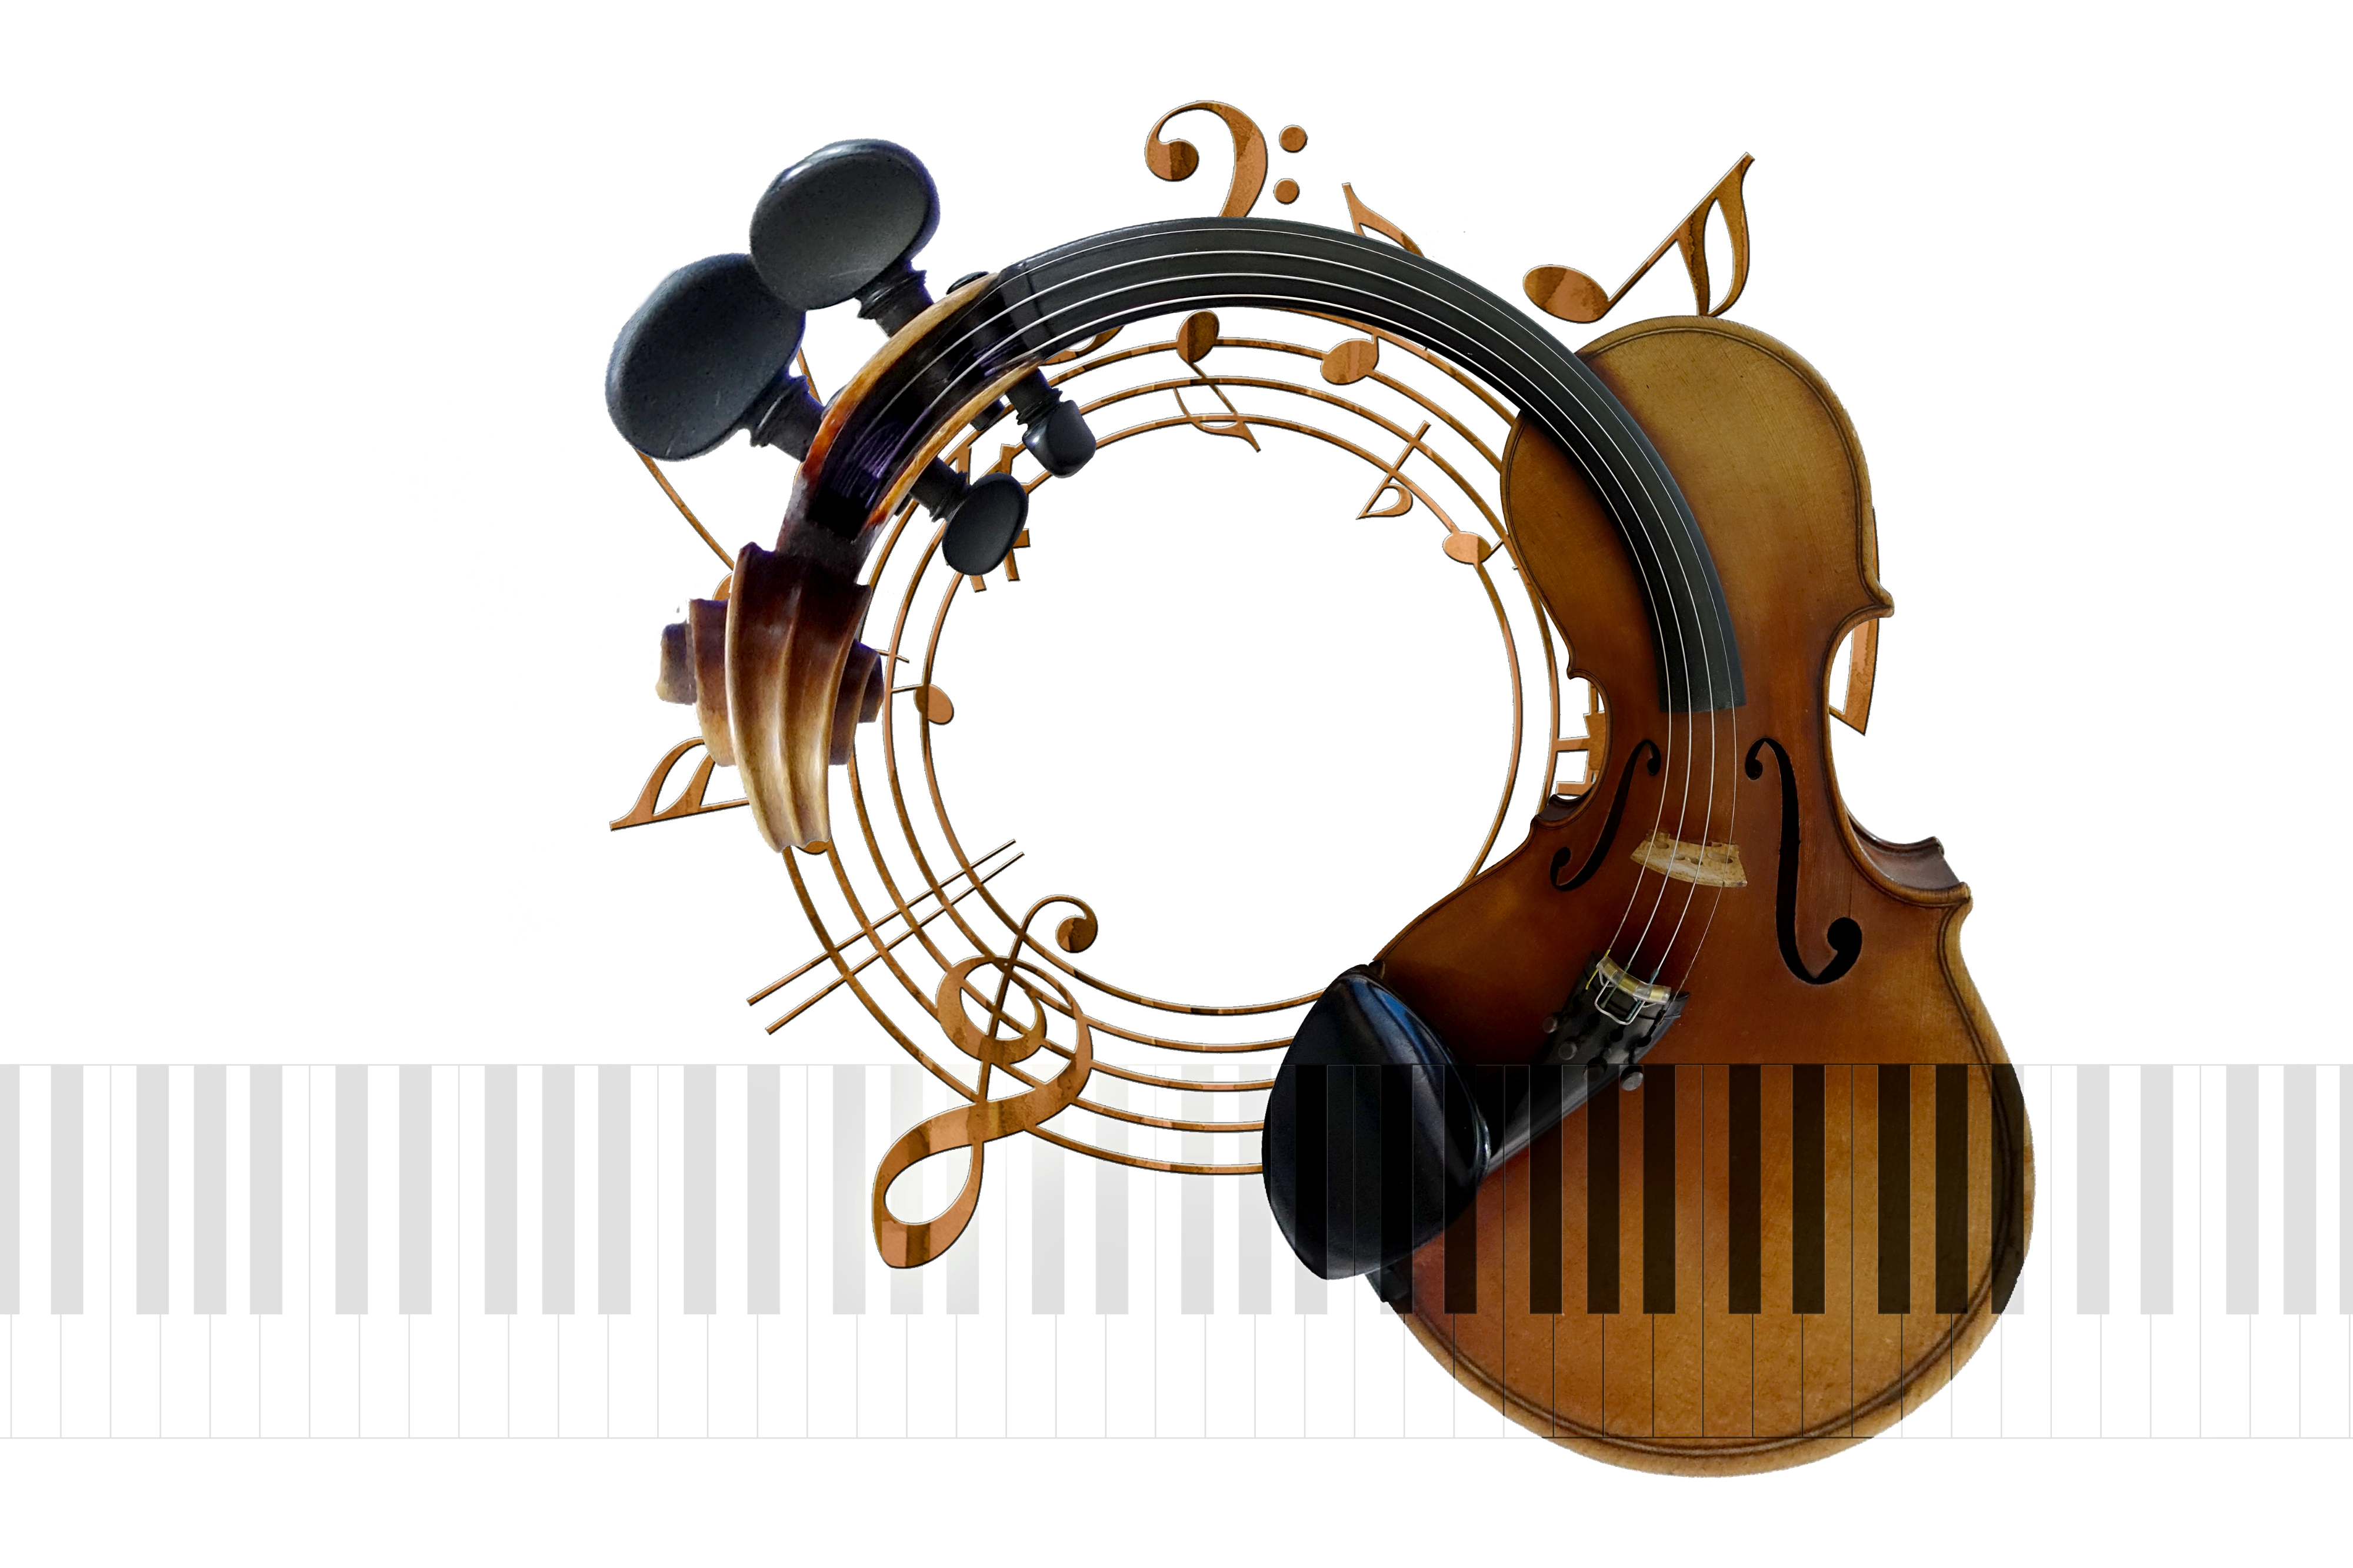 Cirkel av bruna notlinjer med noter och klavar. Till höger en cello vars mittendel, strängar och skaft formats längs merparten av cirkeln. Gråvitt klaviatur under cirkeln, delvis över cellon.